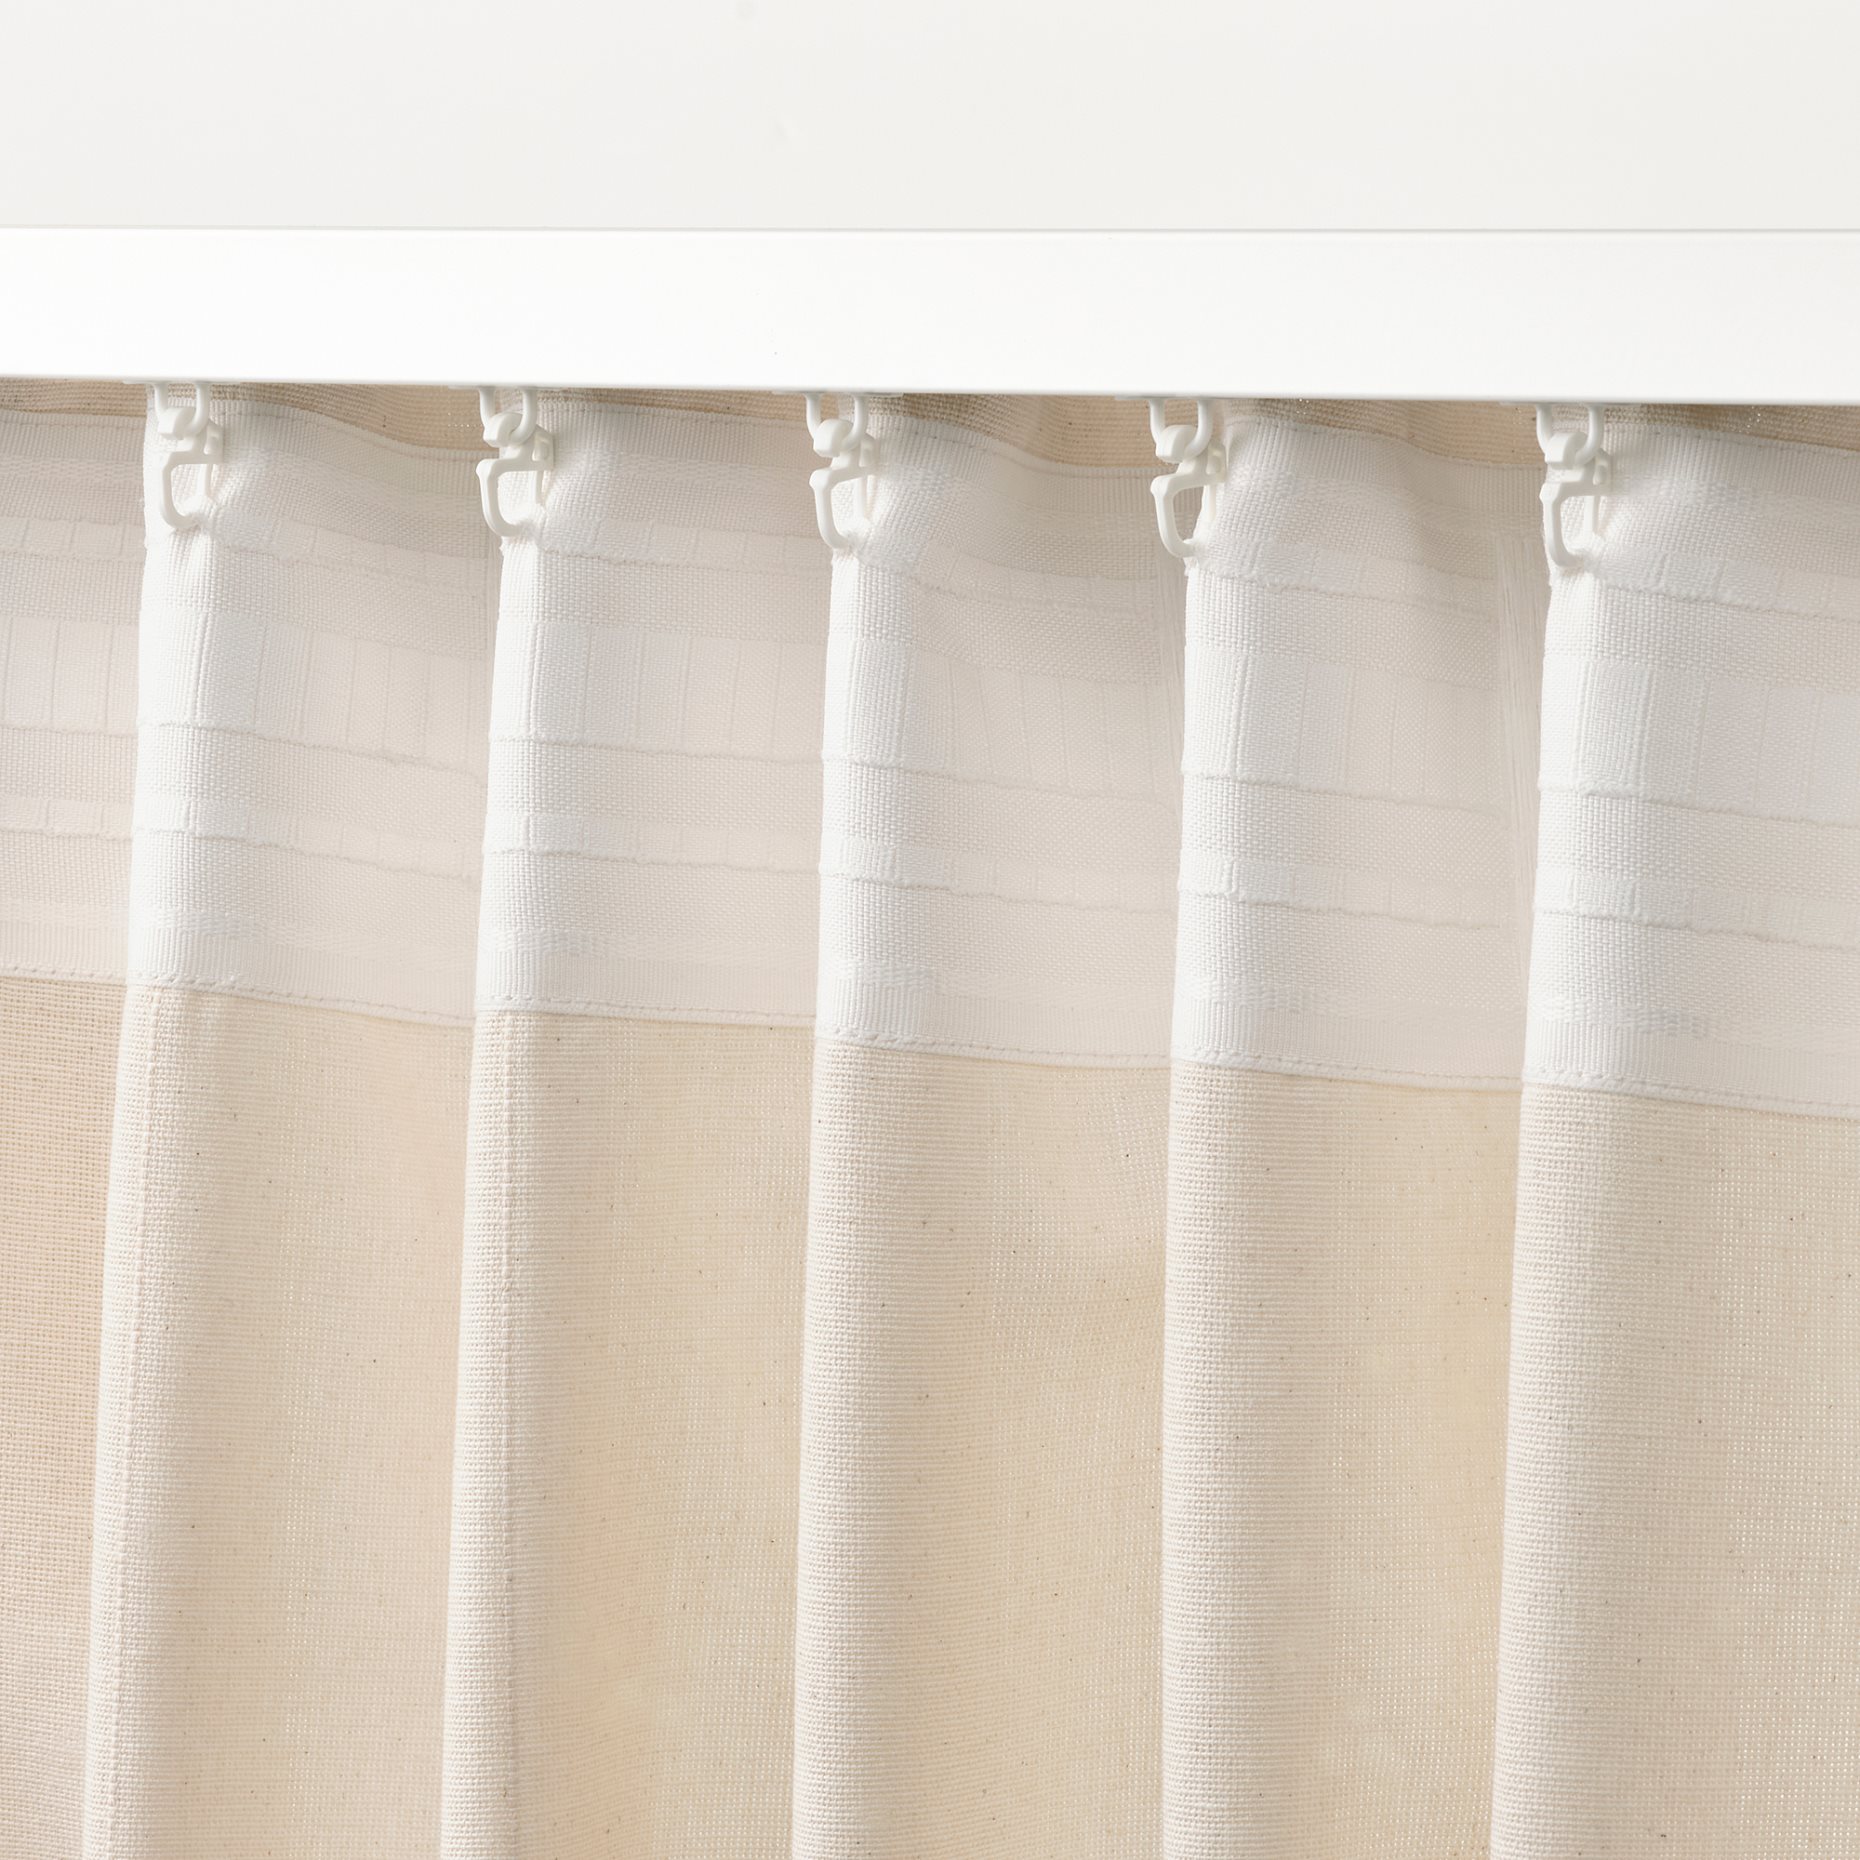 LENDA, curtains with tie-backs 1 pair, 140x300 cm, 505.528.81